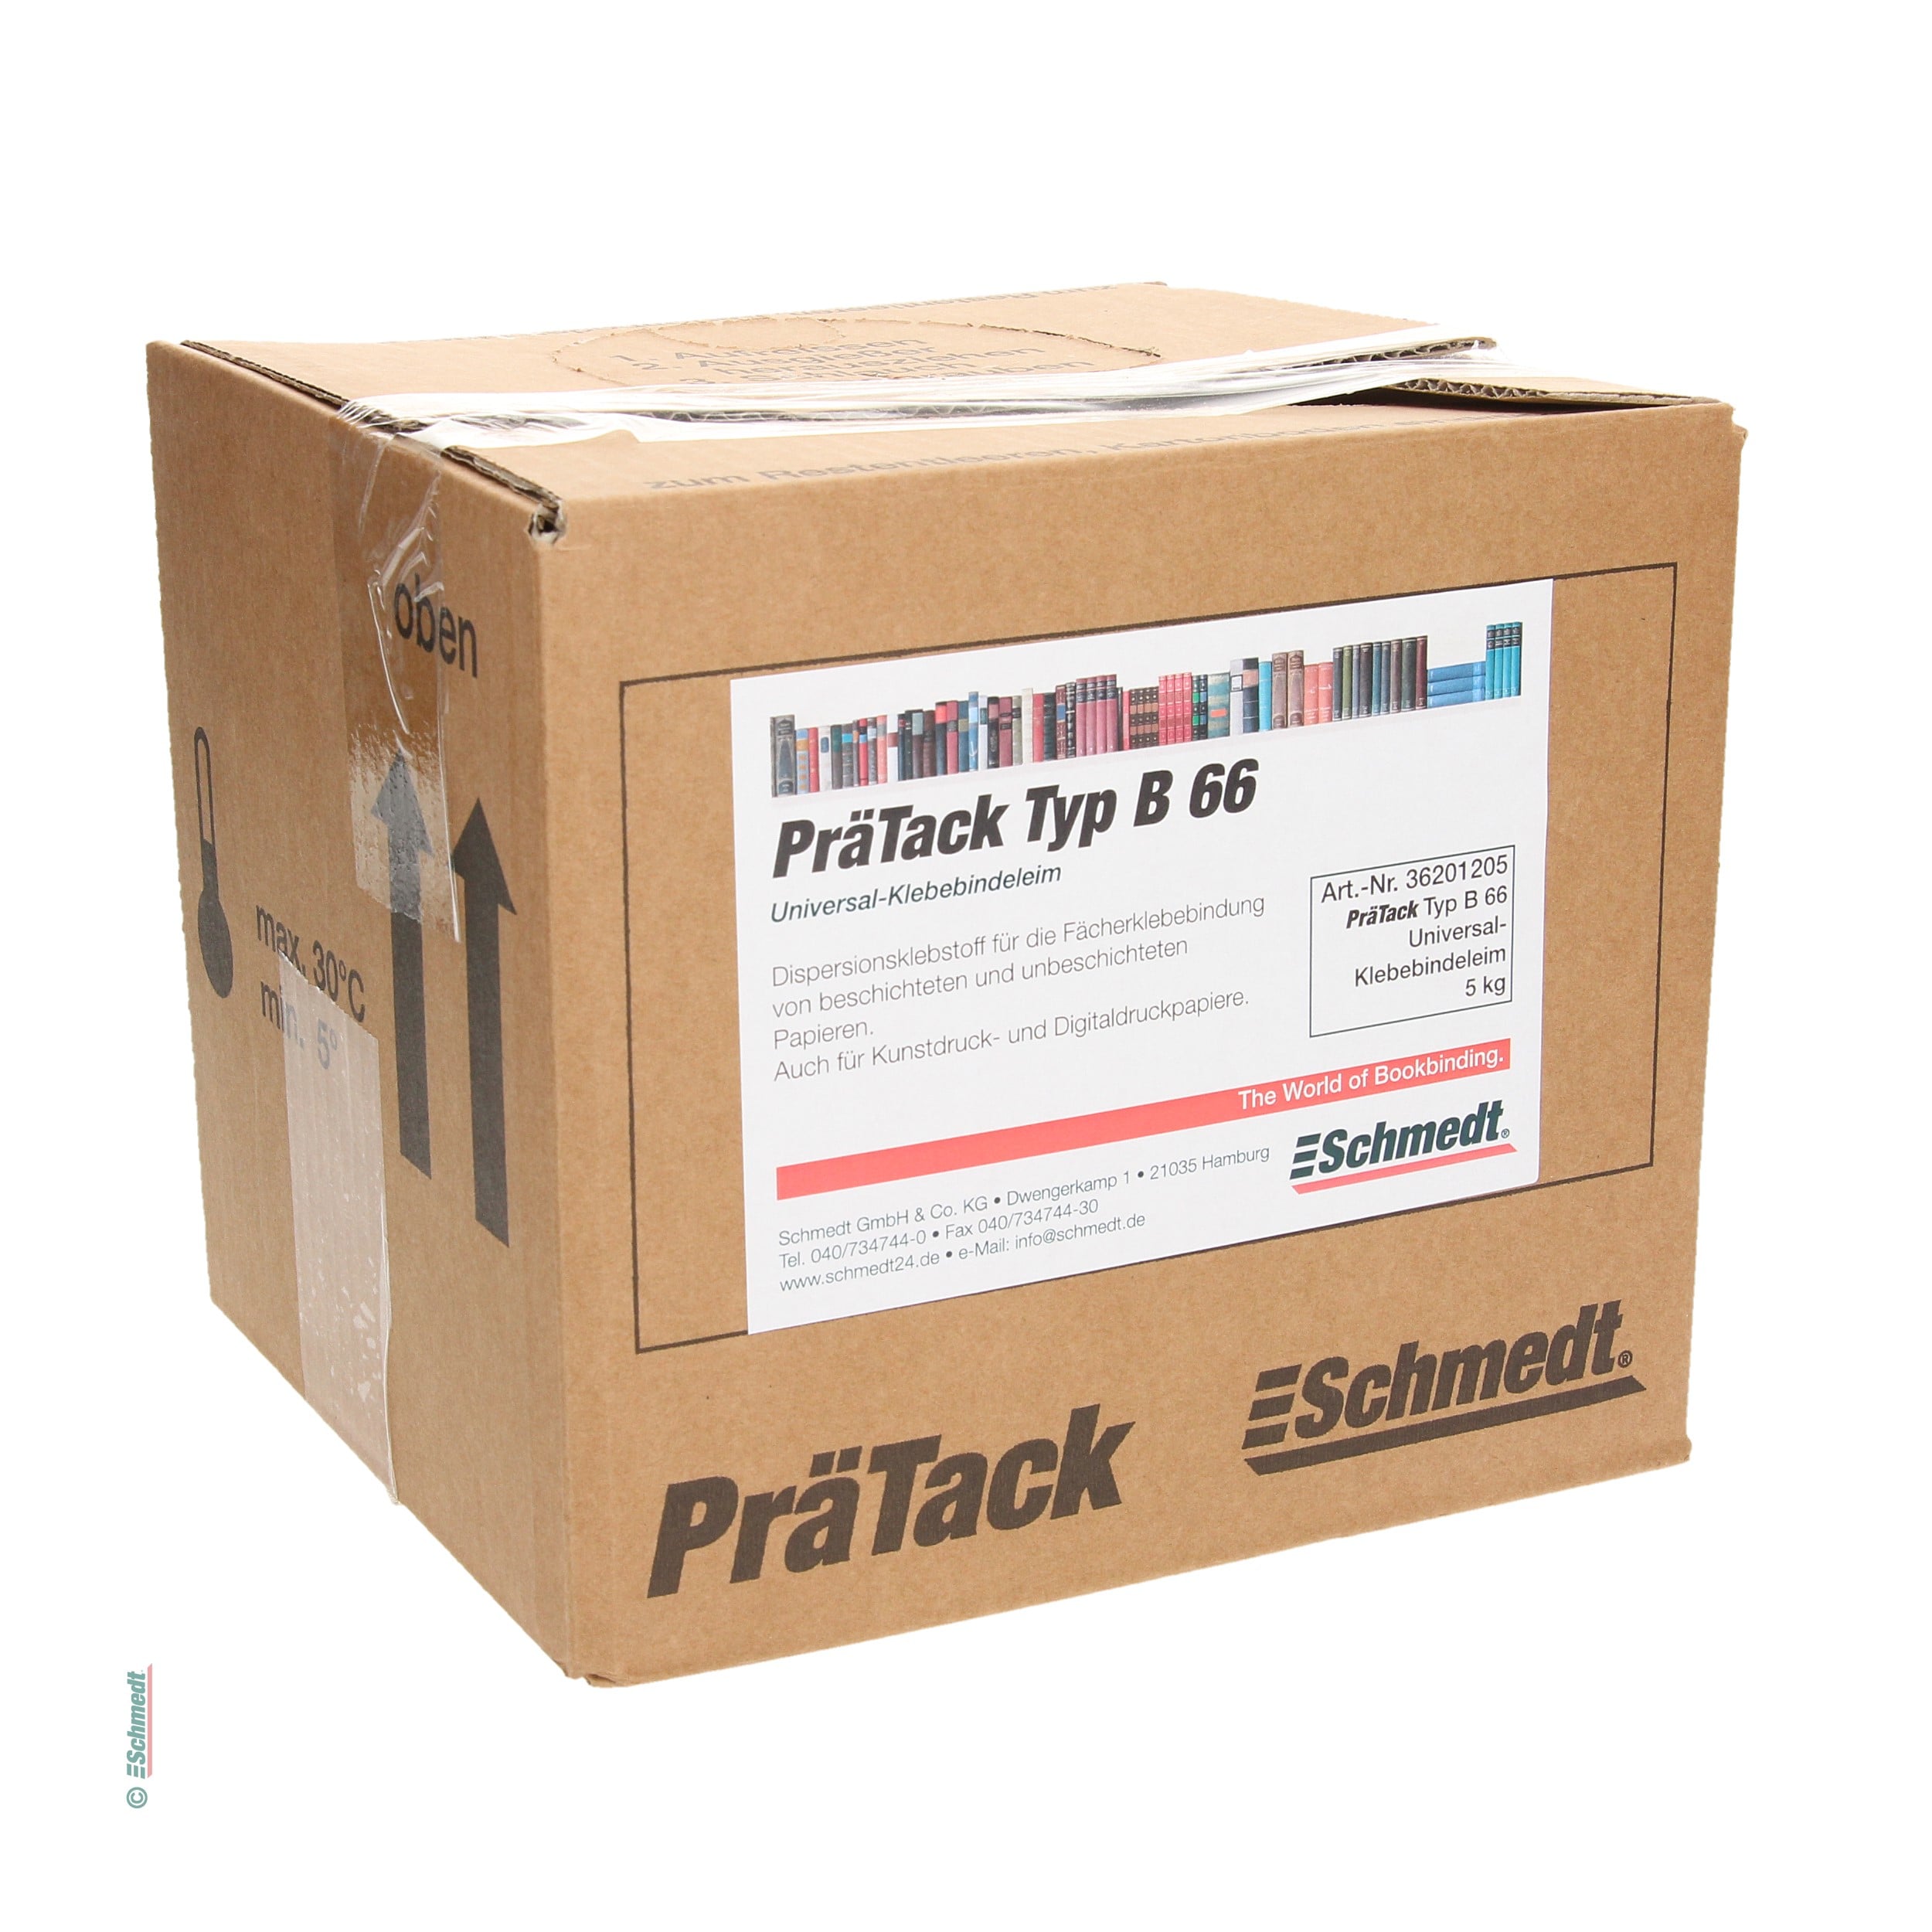 PräTack B66 - Gebindegröße Bag-in-Box / 5 kg - für die Fächer-Klebebindung von beschichteten und unbeschichteten Papieren (auch für Kunstdru...